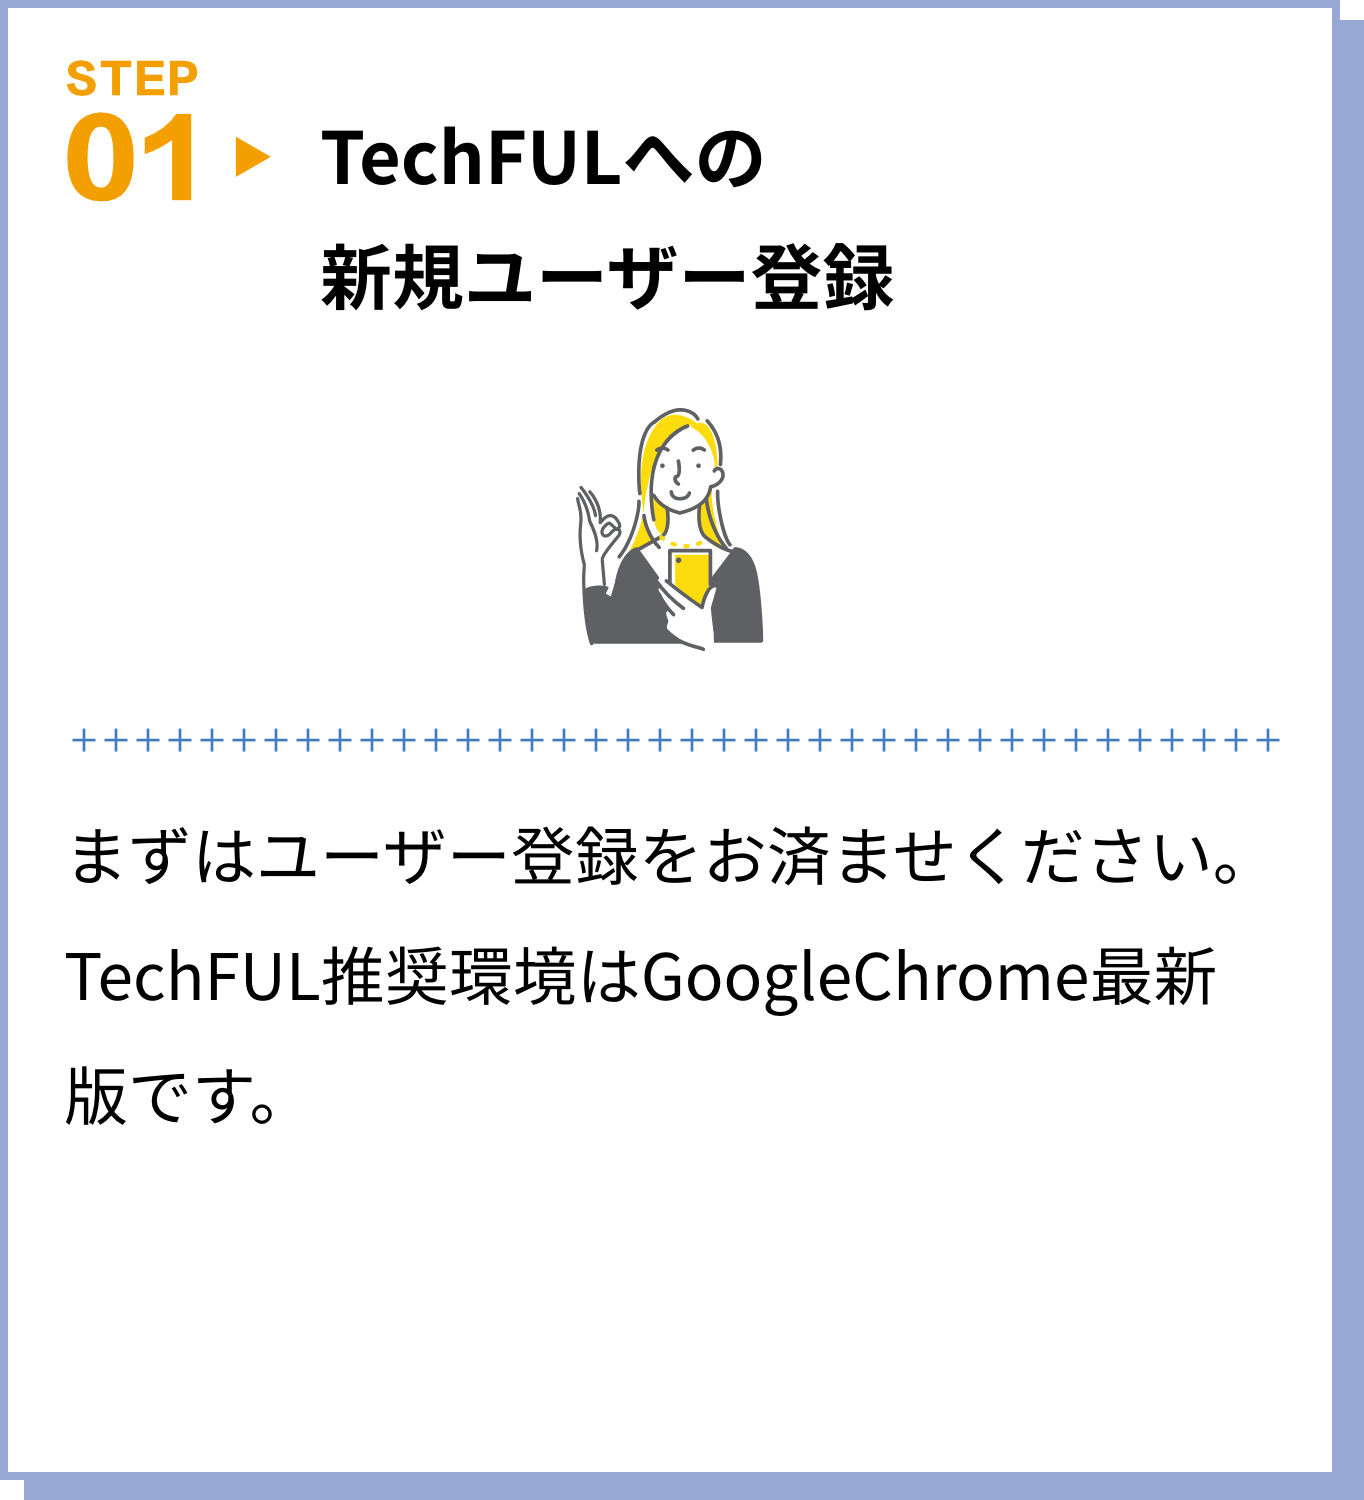 TechFULへの新規ユーザー登録